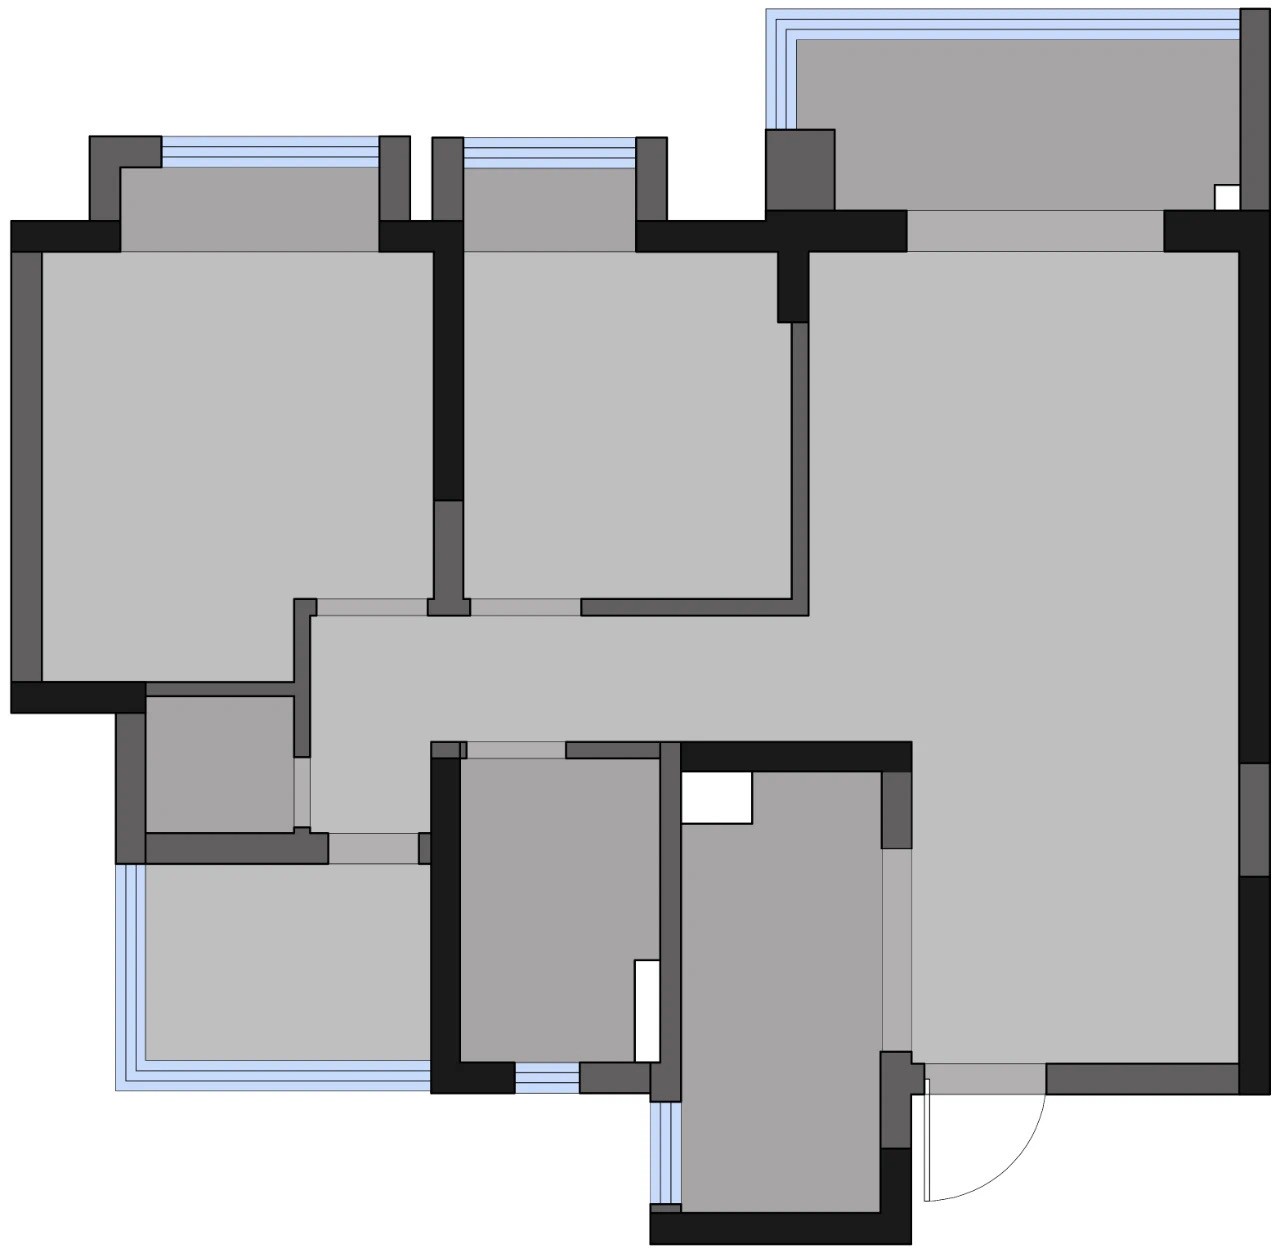 89现代三房装修效果图,89平米现代简约风装修案例效果图-美广网(图1)